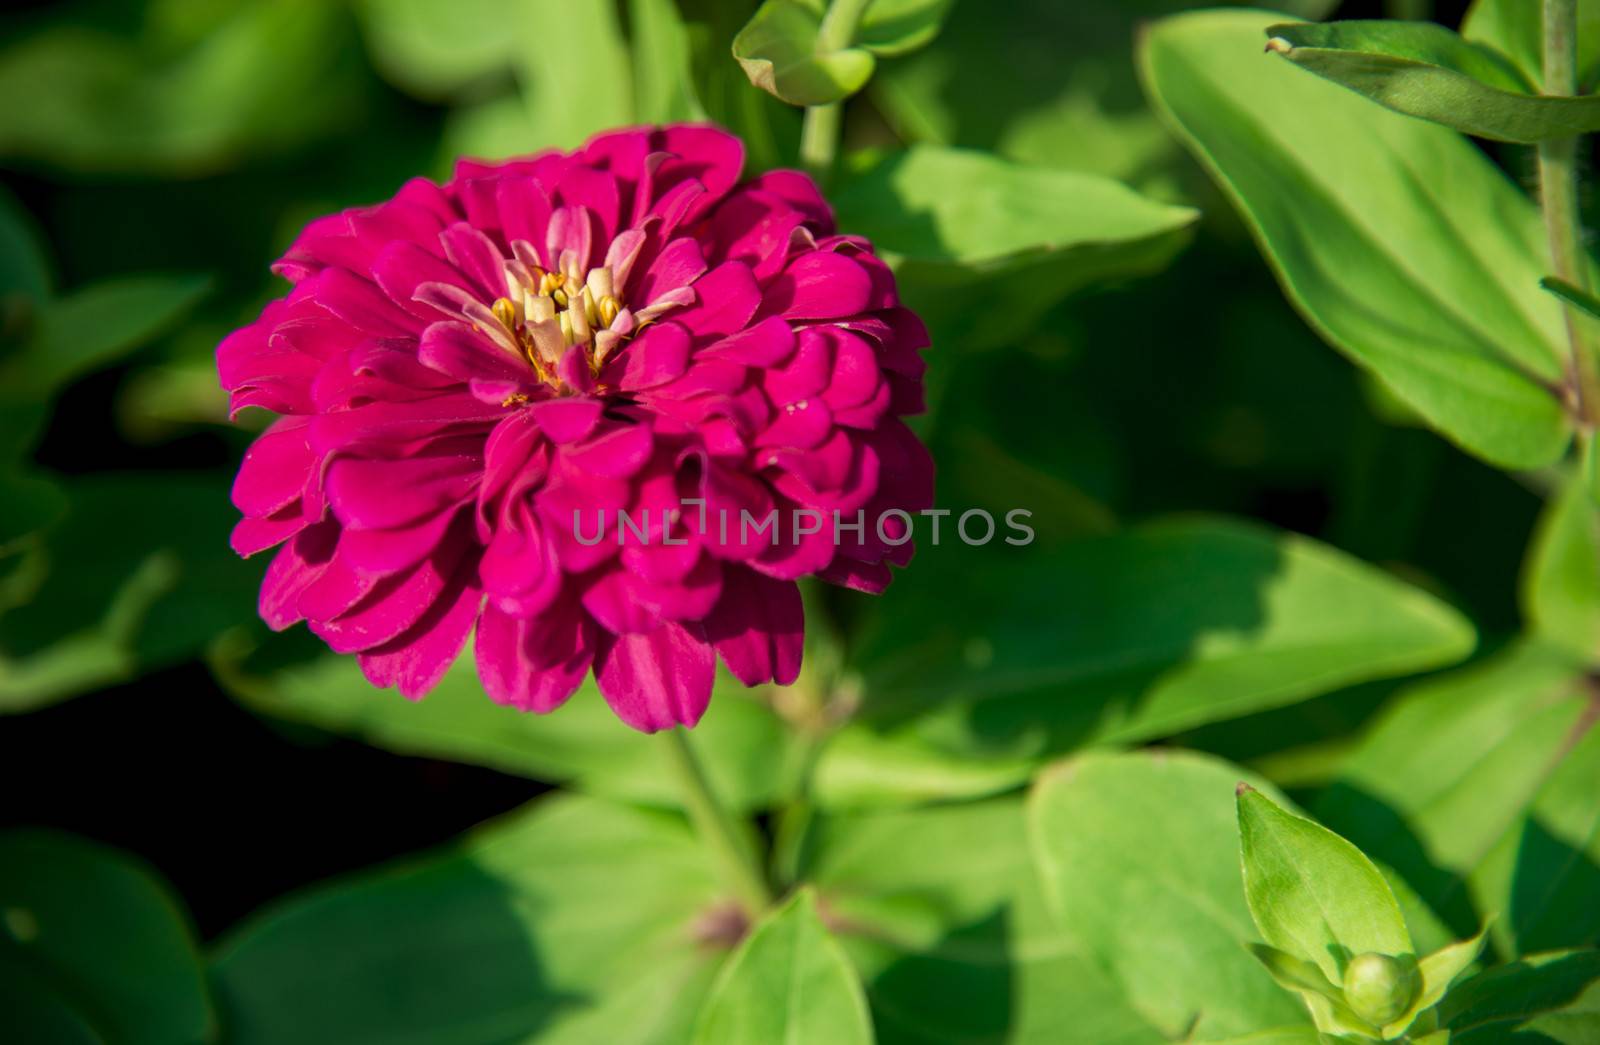 A pink gerbera flower in the garden1